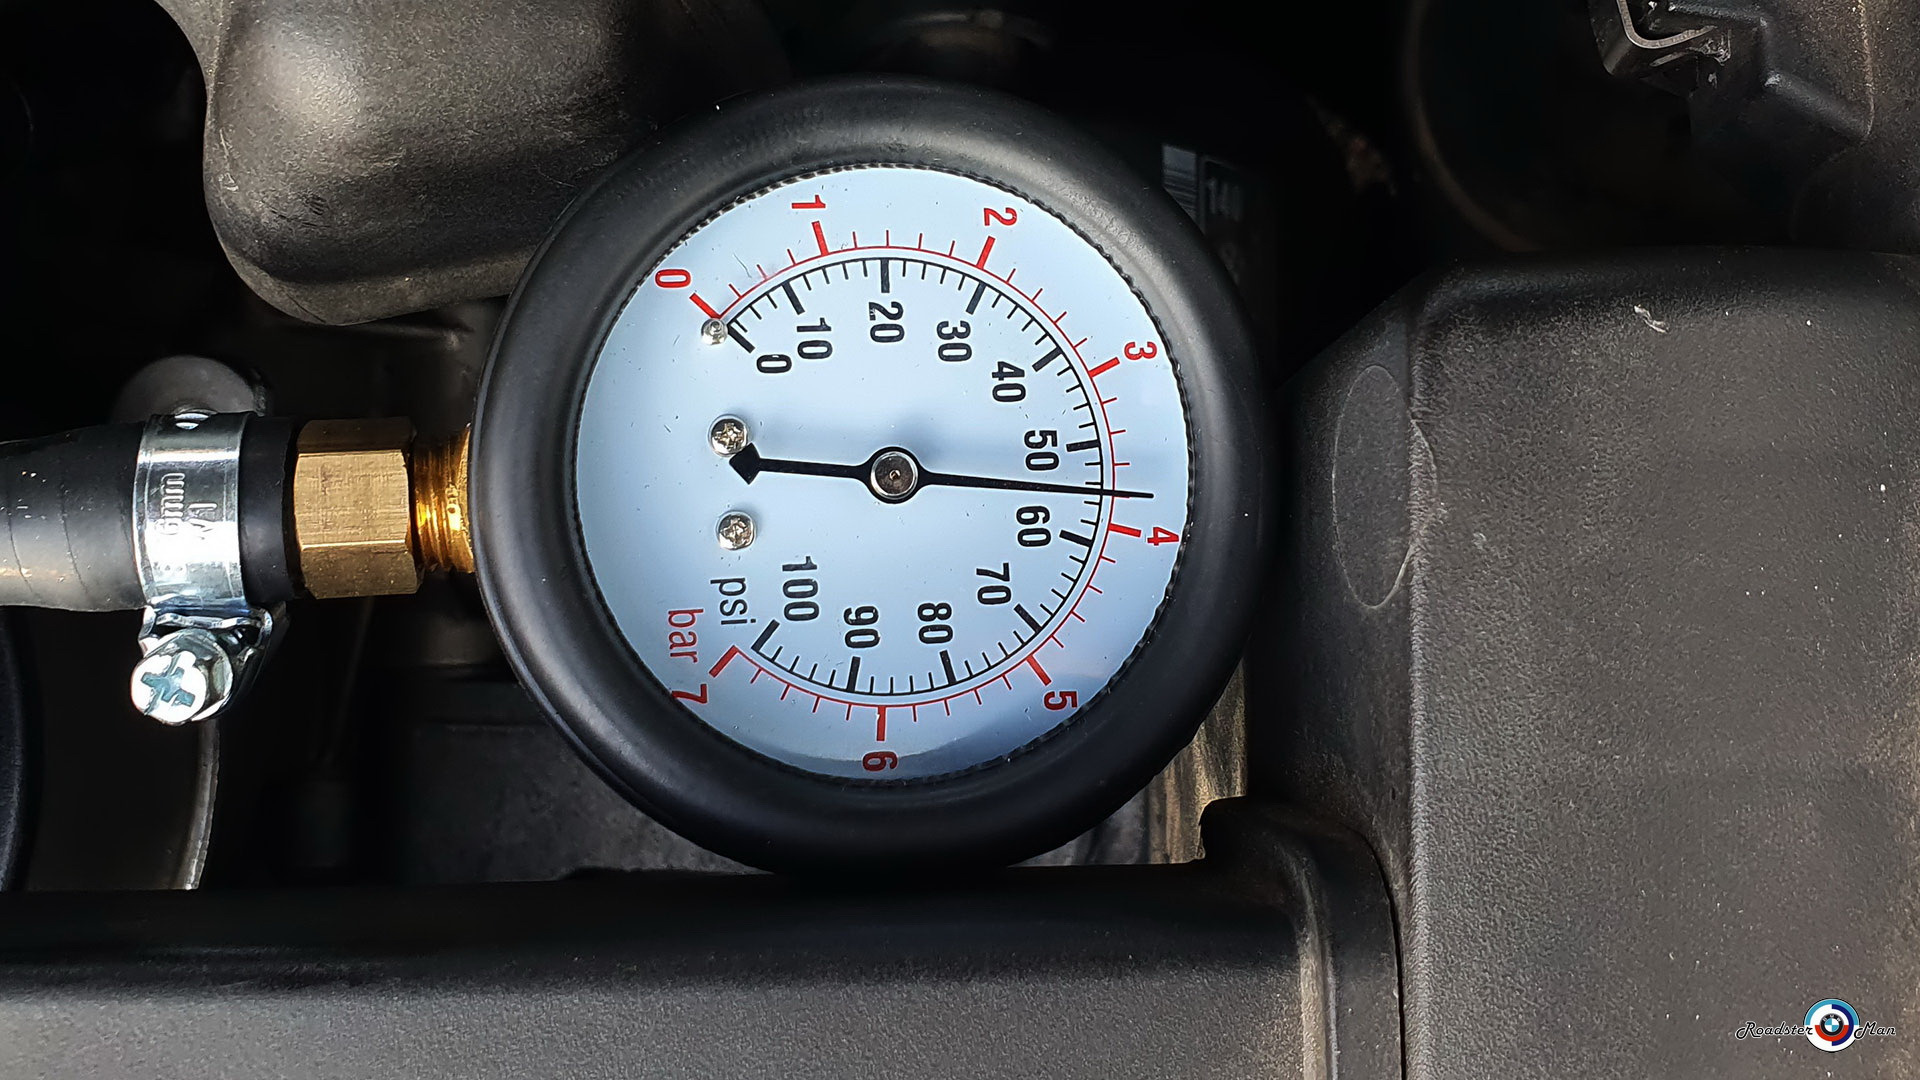 Peugeot давление масла. Замер давления масла Пежо 308 ep6. Выносной манометр давления топлива на Пежо 308. Пежо 308 замер давления топлива. Замер давления топлива Пежо 308 ep6.